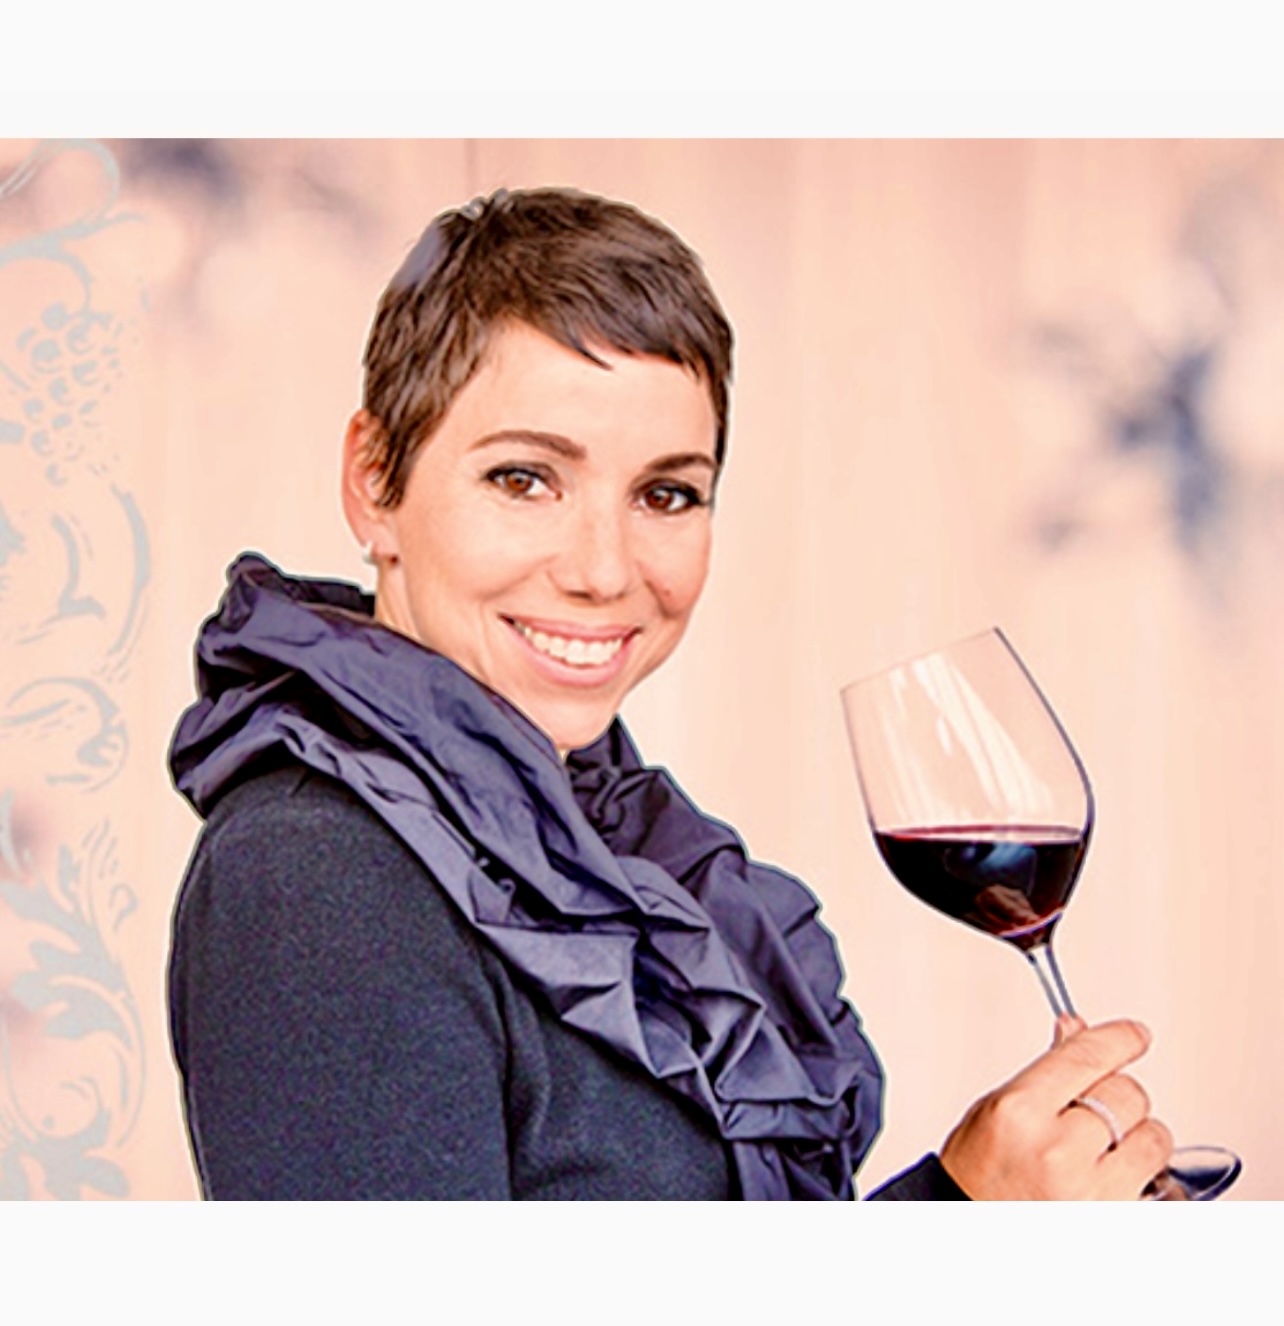 Une femme tenant un verre de vins.

Remarque : « vins » est le mot français pour vin.